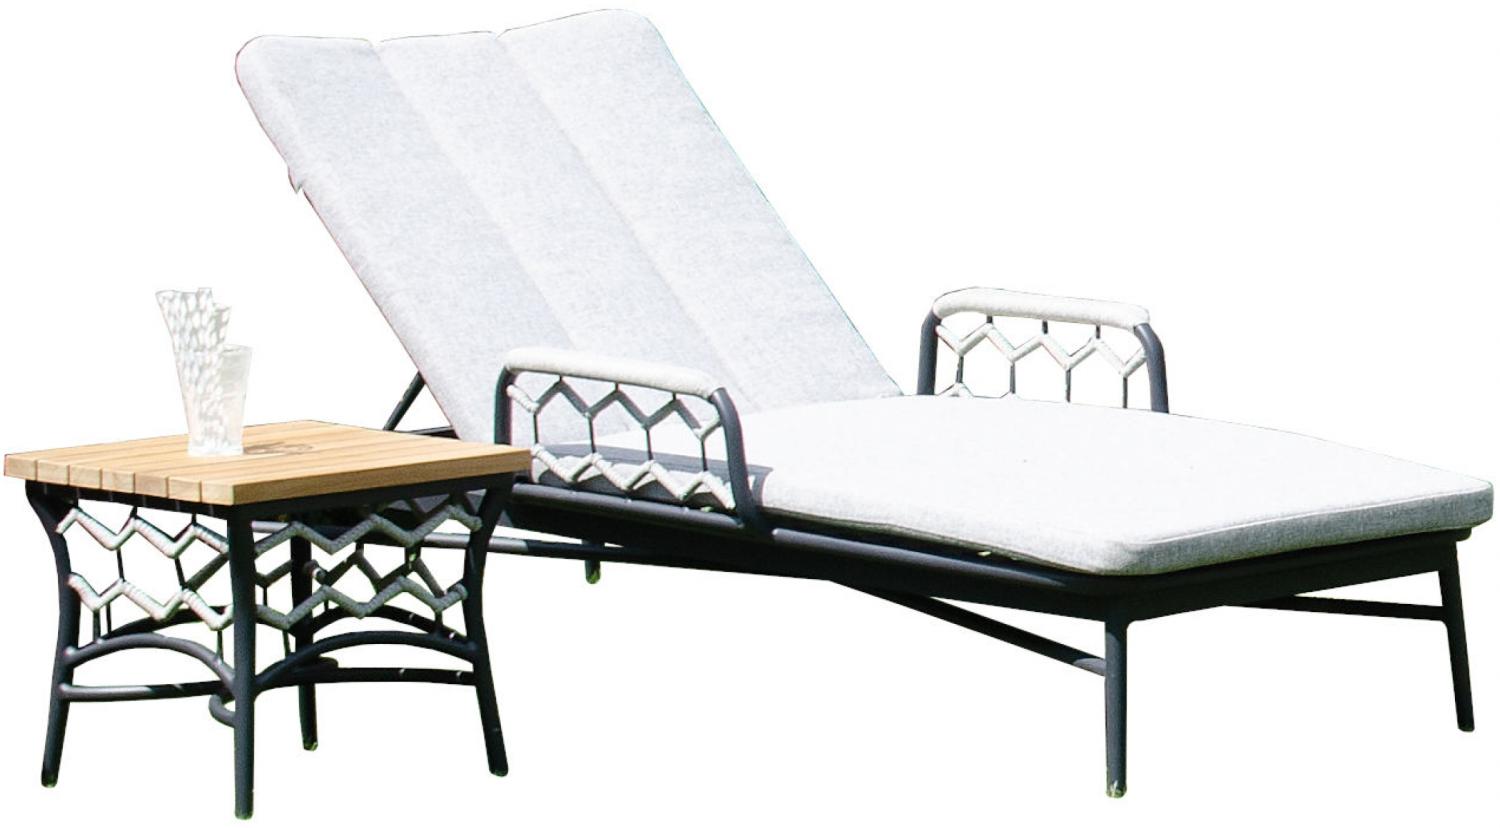 Sonnenpartner Lounge-Liege Yale mit Beistelltisch Teak/Aluminium mit Polyrope silbergrau mit Auflage Bild 1